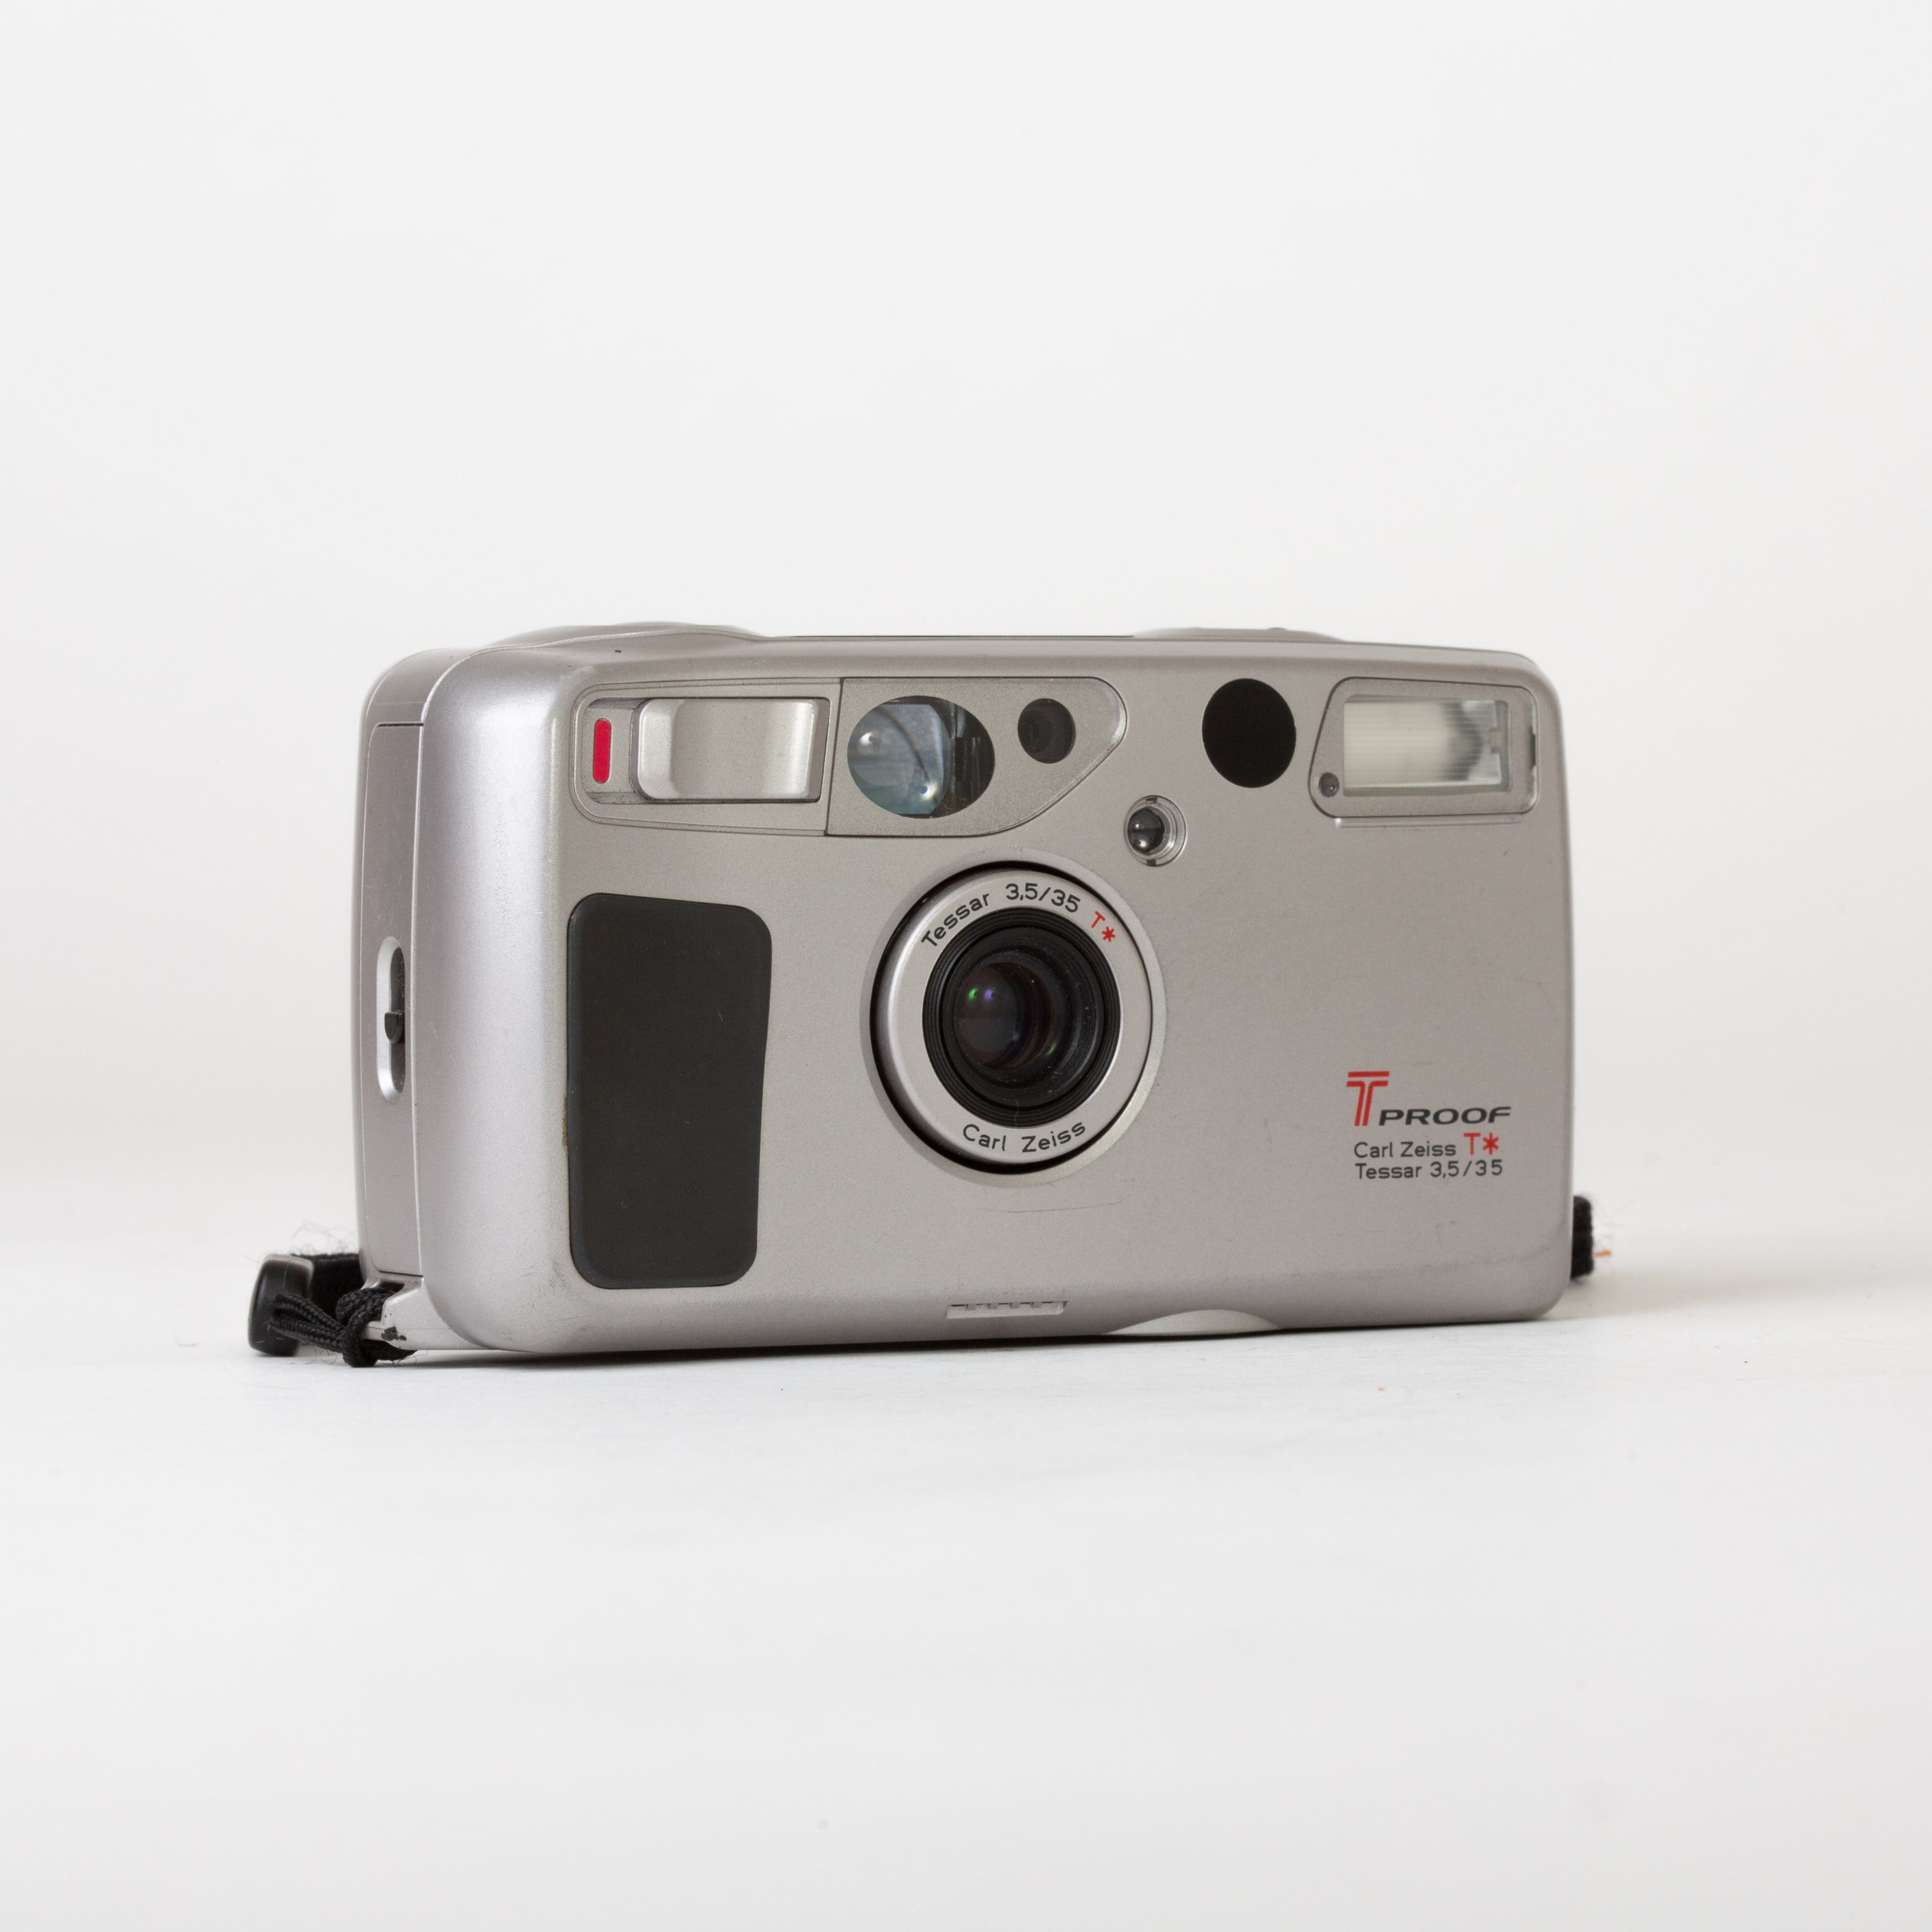 Kyocera TPROOF Carl Zeiss Tessar 35mm f/3.5 – Film Supply Club